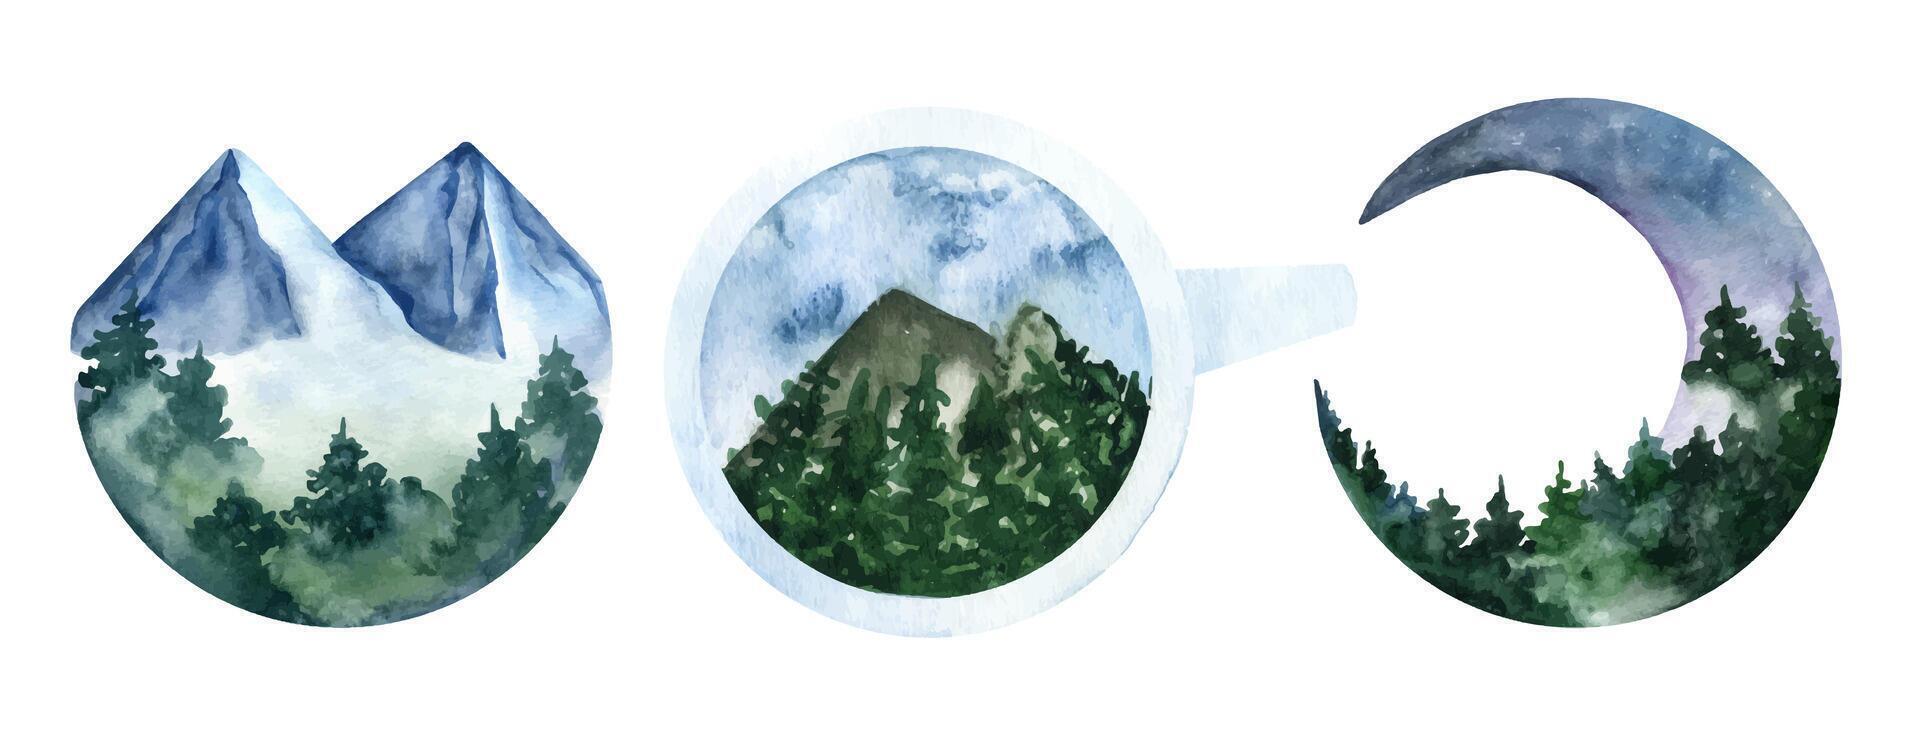 Aquarell Berg und Grün Baum im Kreis Form, Teetasse und Mond. vektor